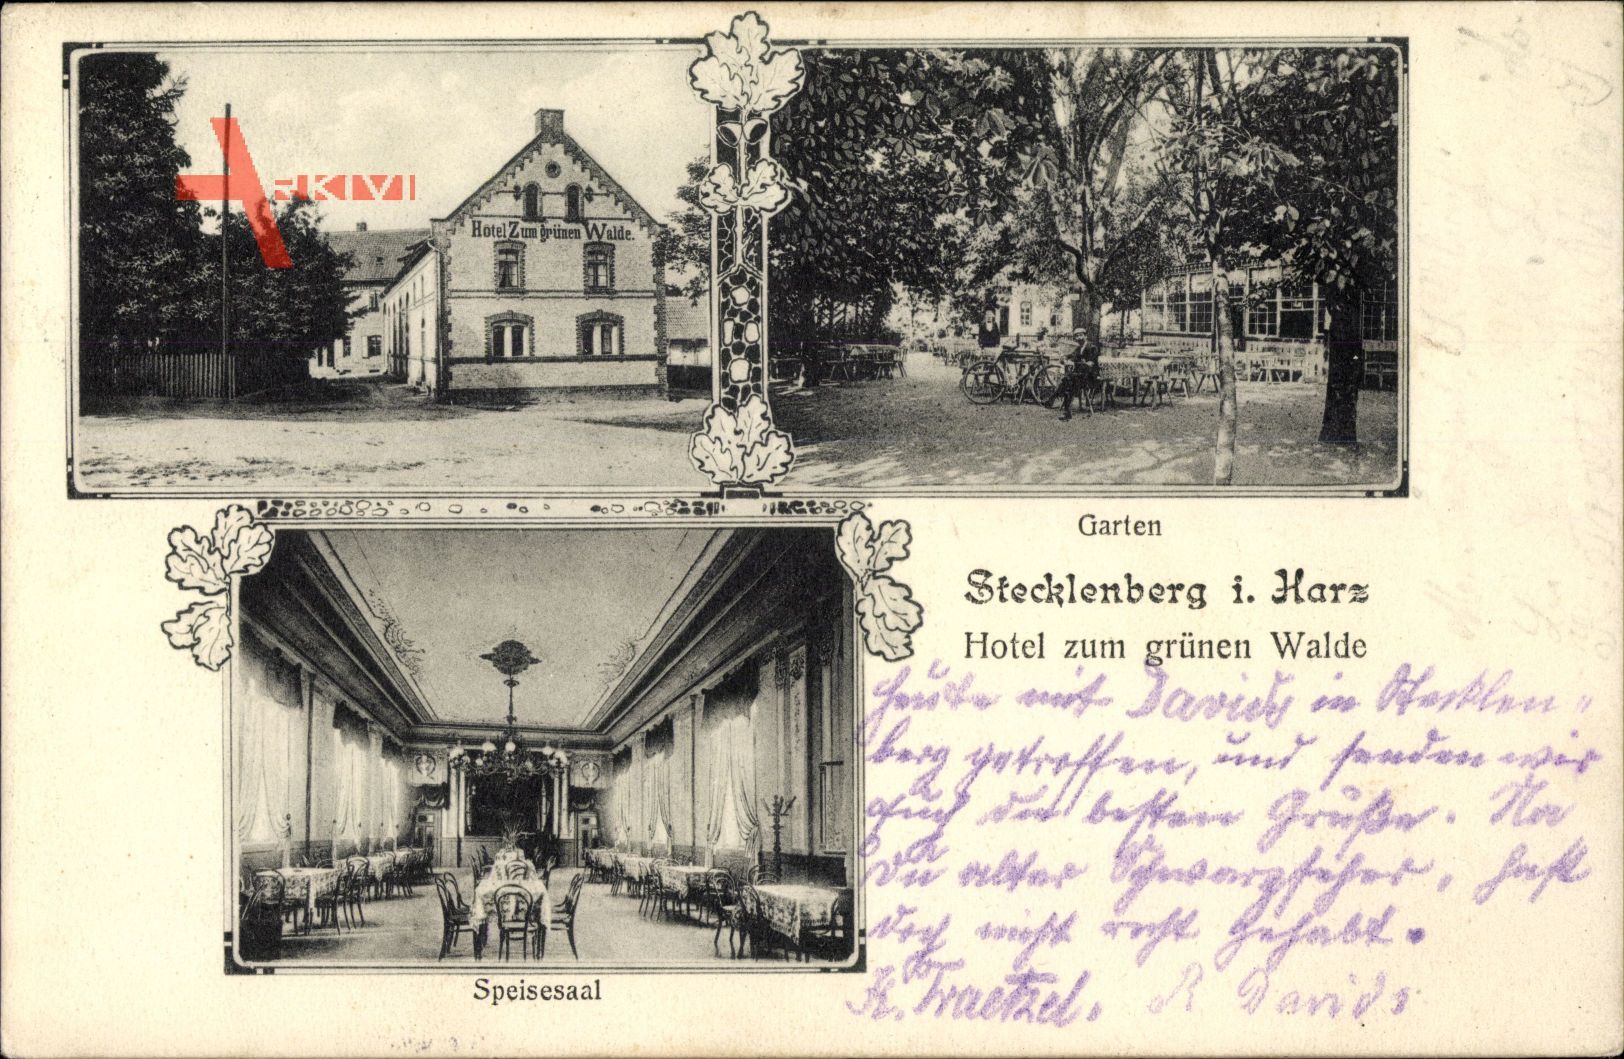 Stecklenberg Thale Harz, Hotel zum grünen Walde, Speisesaal